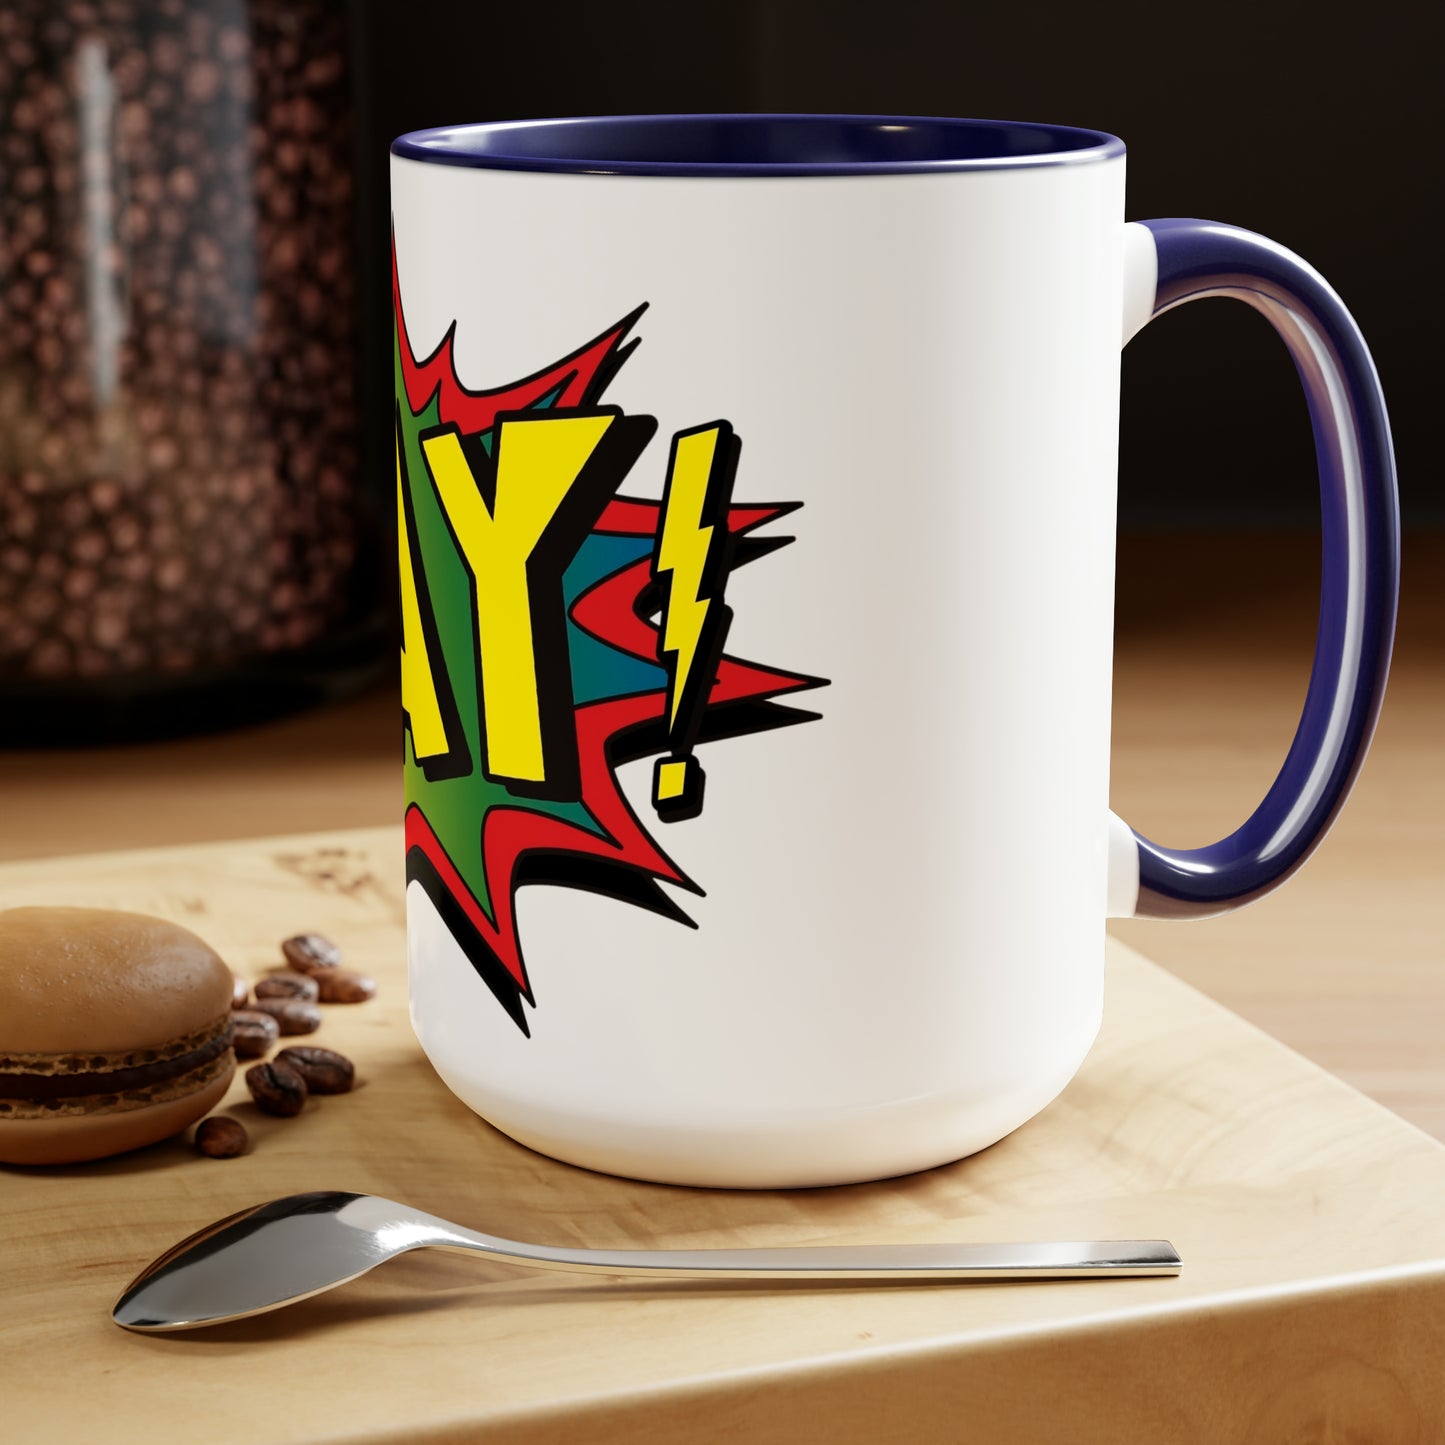 GAY! Two-Tone Coffee Mugs, 15oz